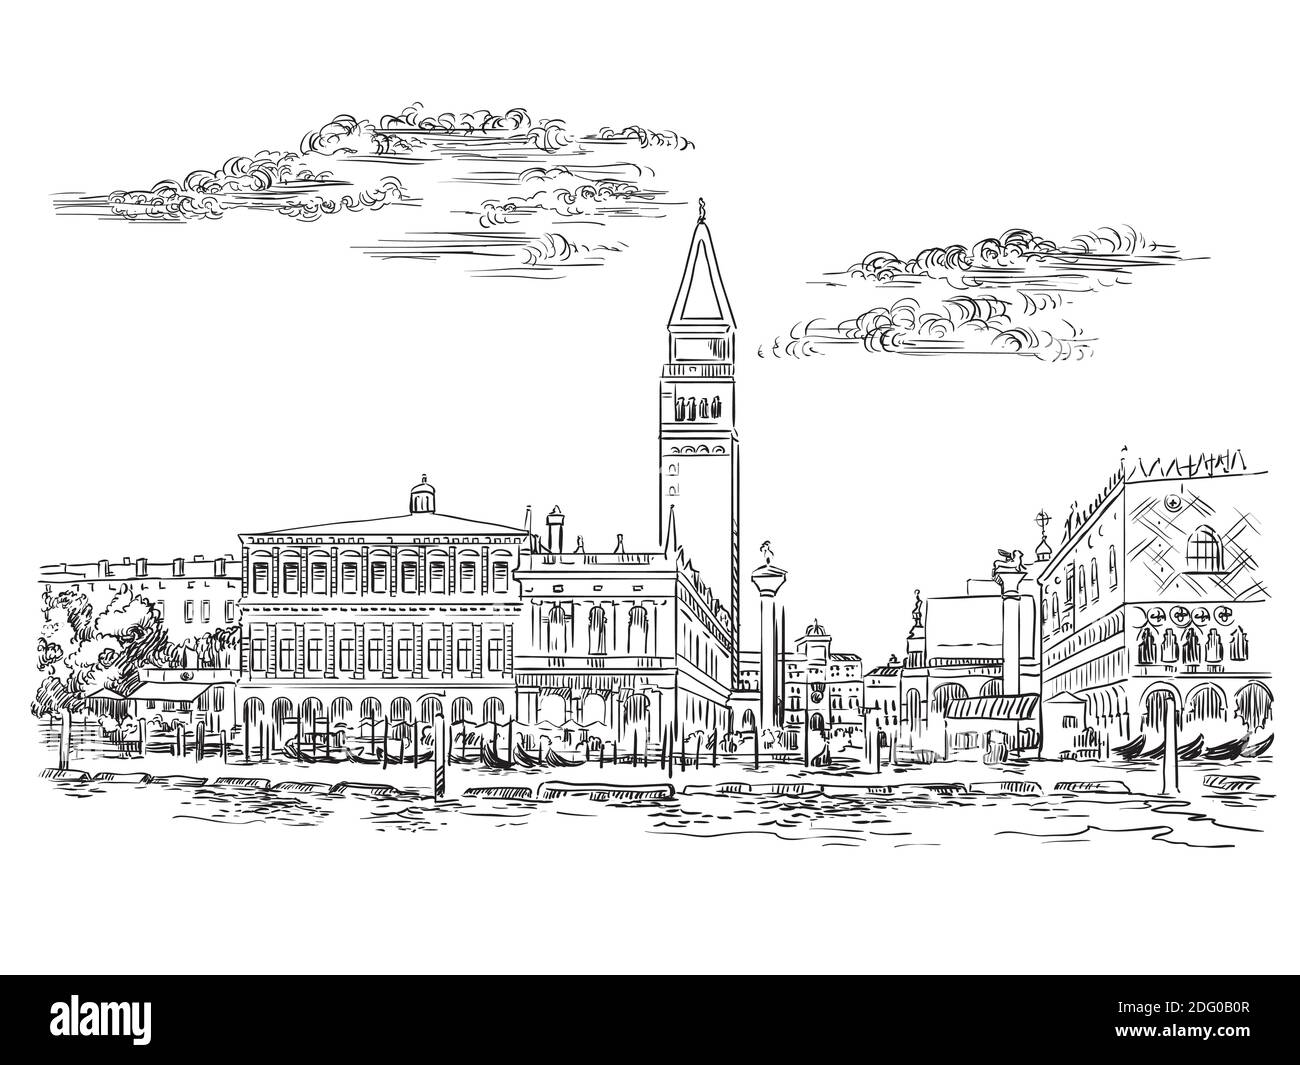 Dibujo vectorial a mano dibujo ilustración de la Plaza de San Marcos en Venecia. Horizonte de Venecia dibujo a mano en color negro aislado sobre fondo blanco. T Ilustración del Vector